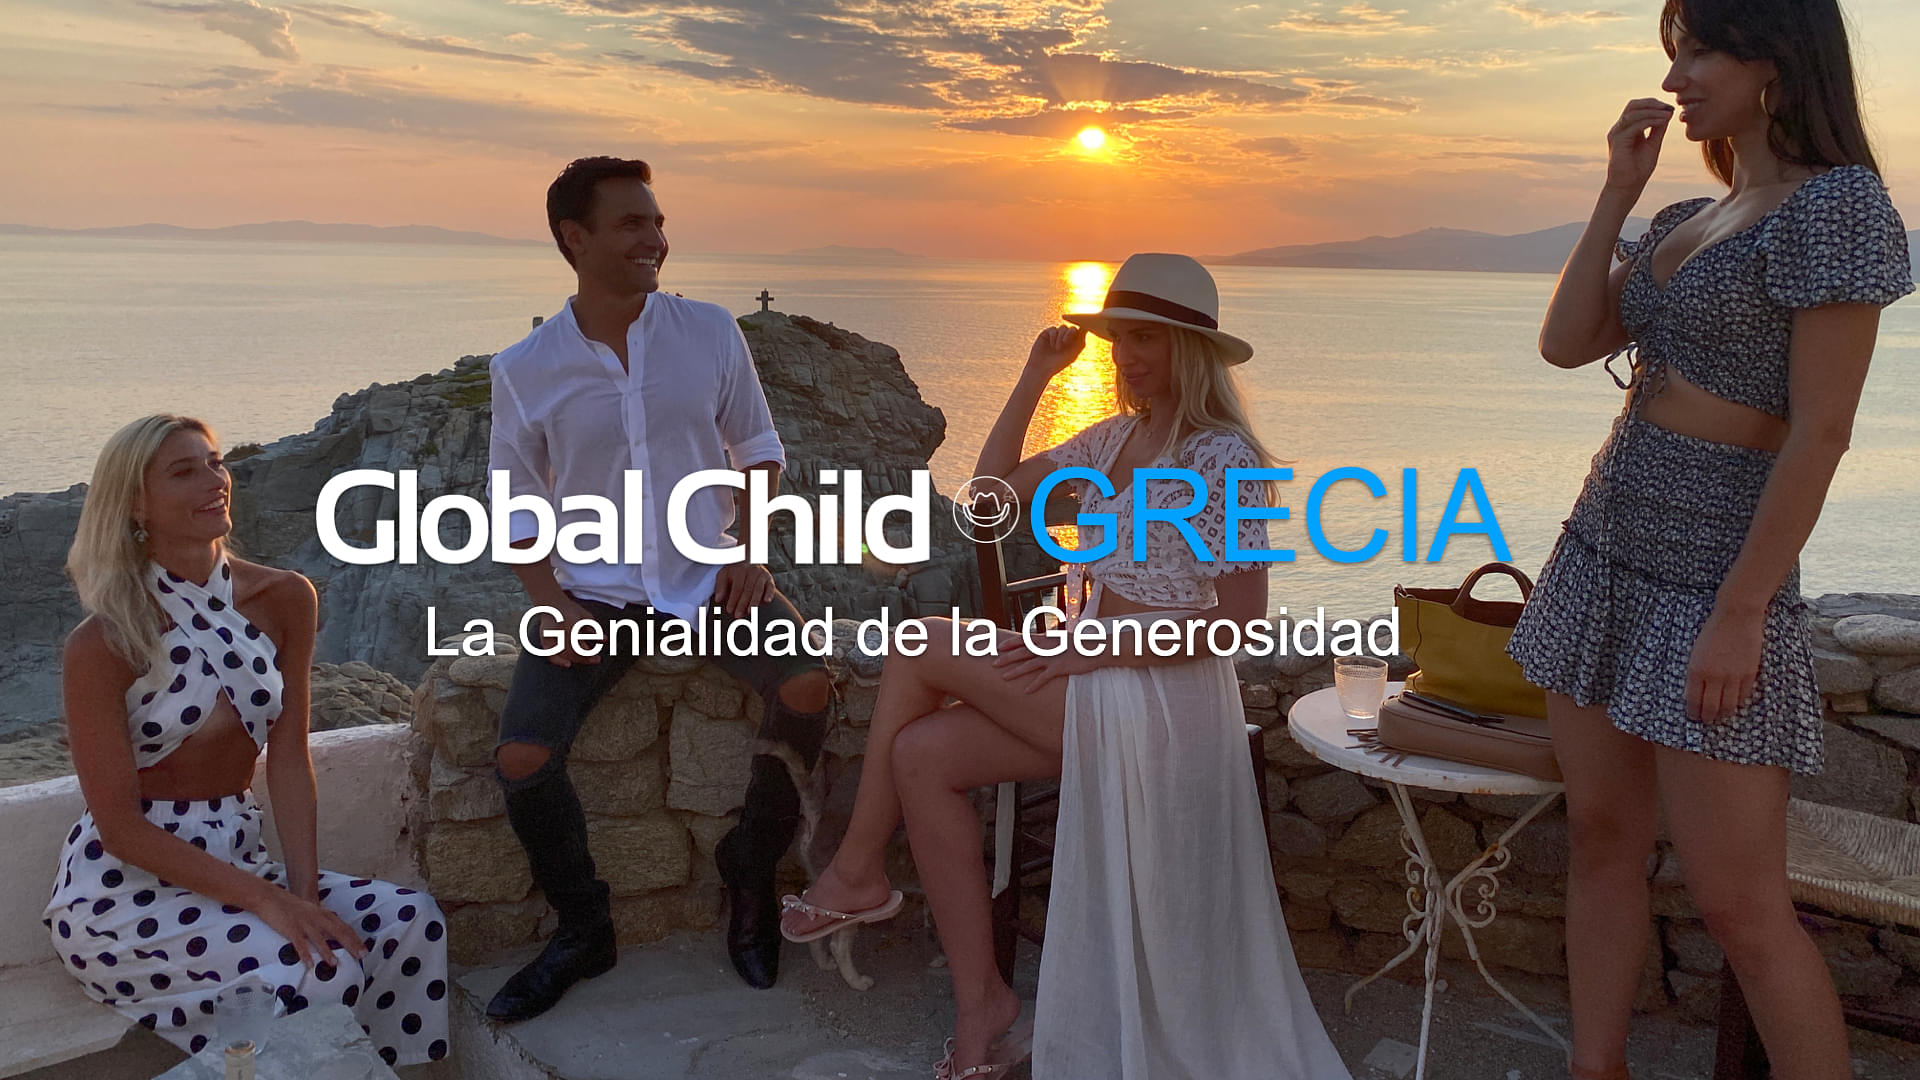 Global child - Grecia: La genialidad de la generosidad